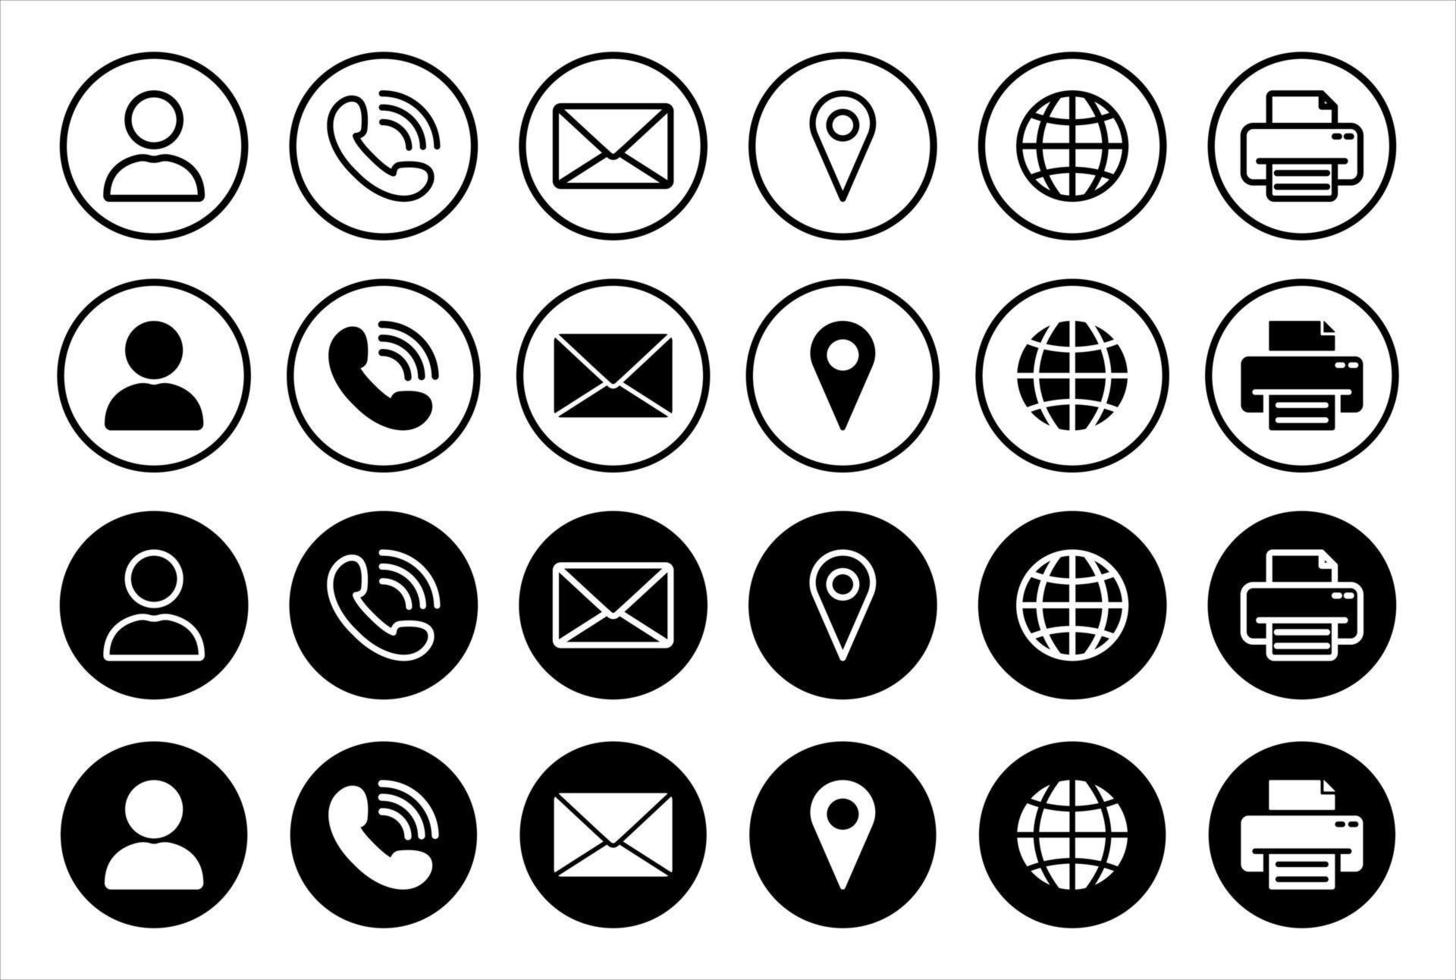 uppsättning online kontakt ikon koncept. svarta knappar symbol för samtal, meddelande och webbkommunikation. telefonlur, e-post, man, stift, glob, faxlinje och siluettikoner. isolerade vektor illustration.